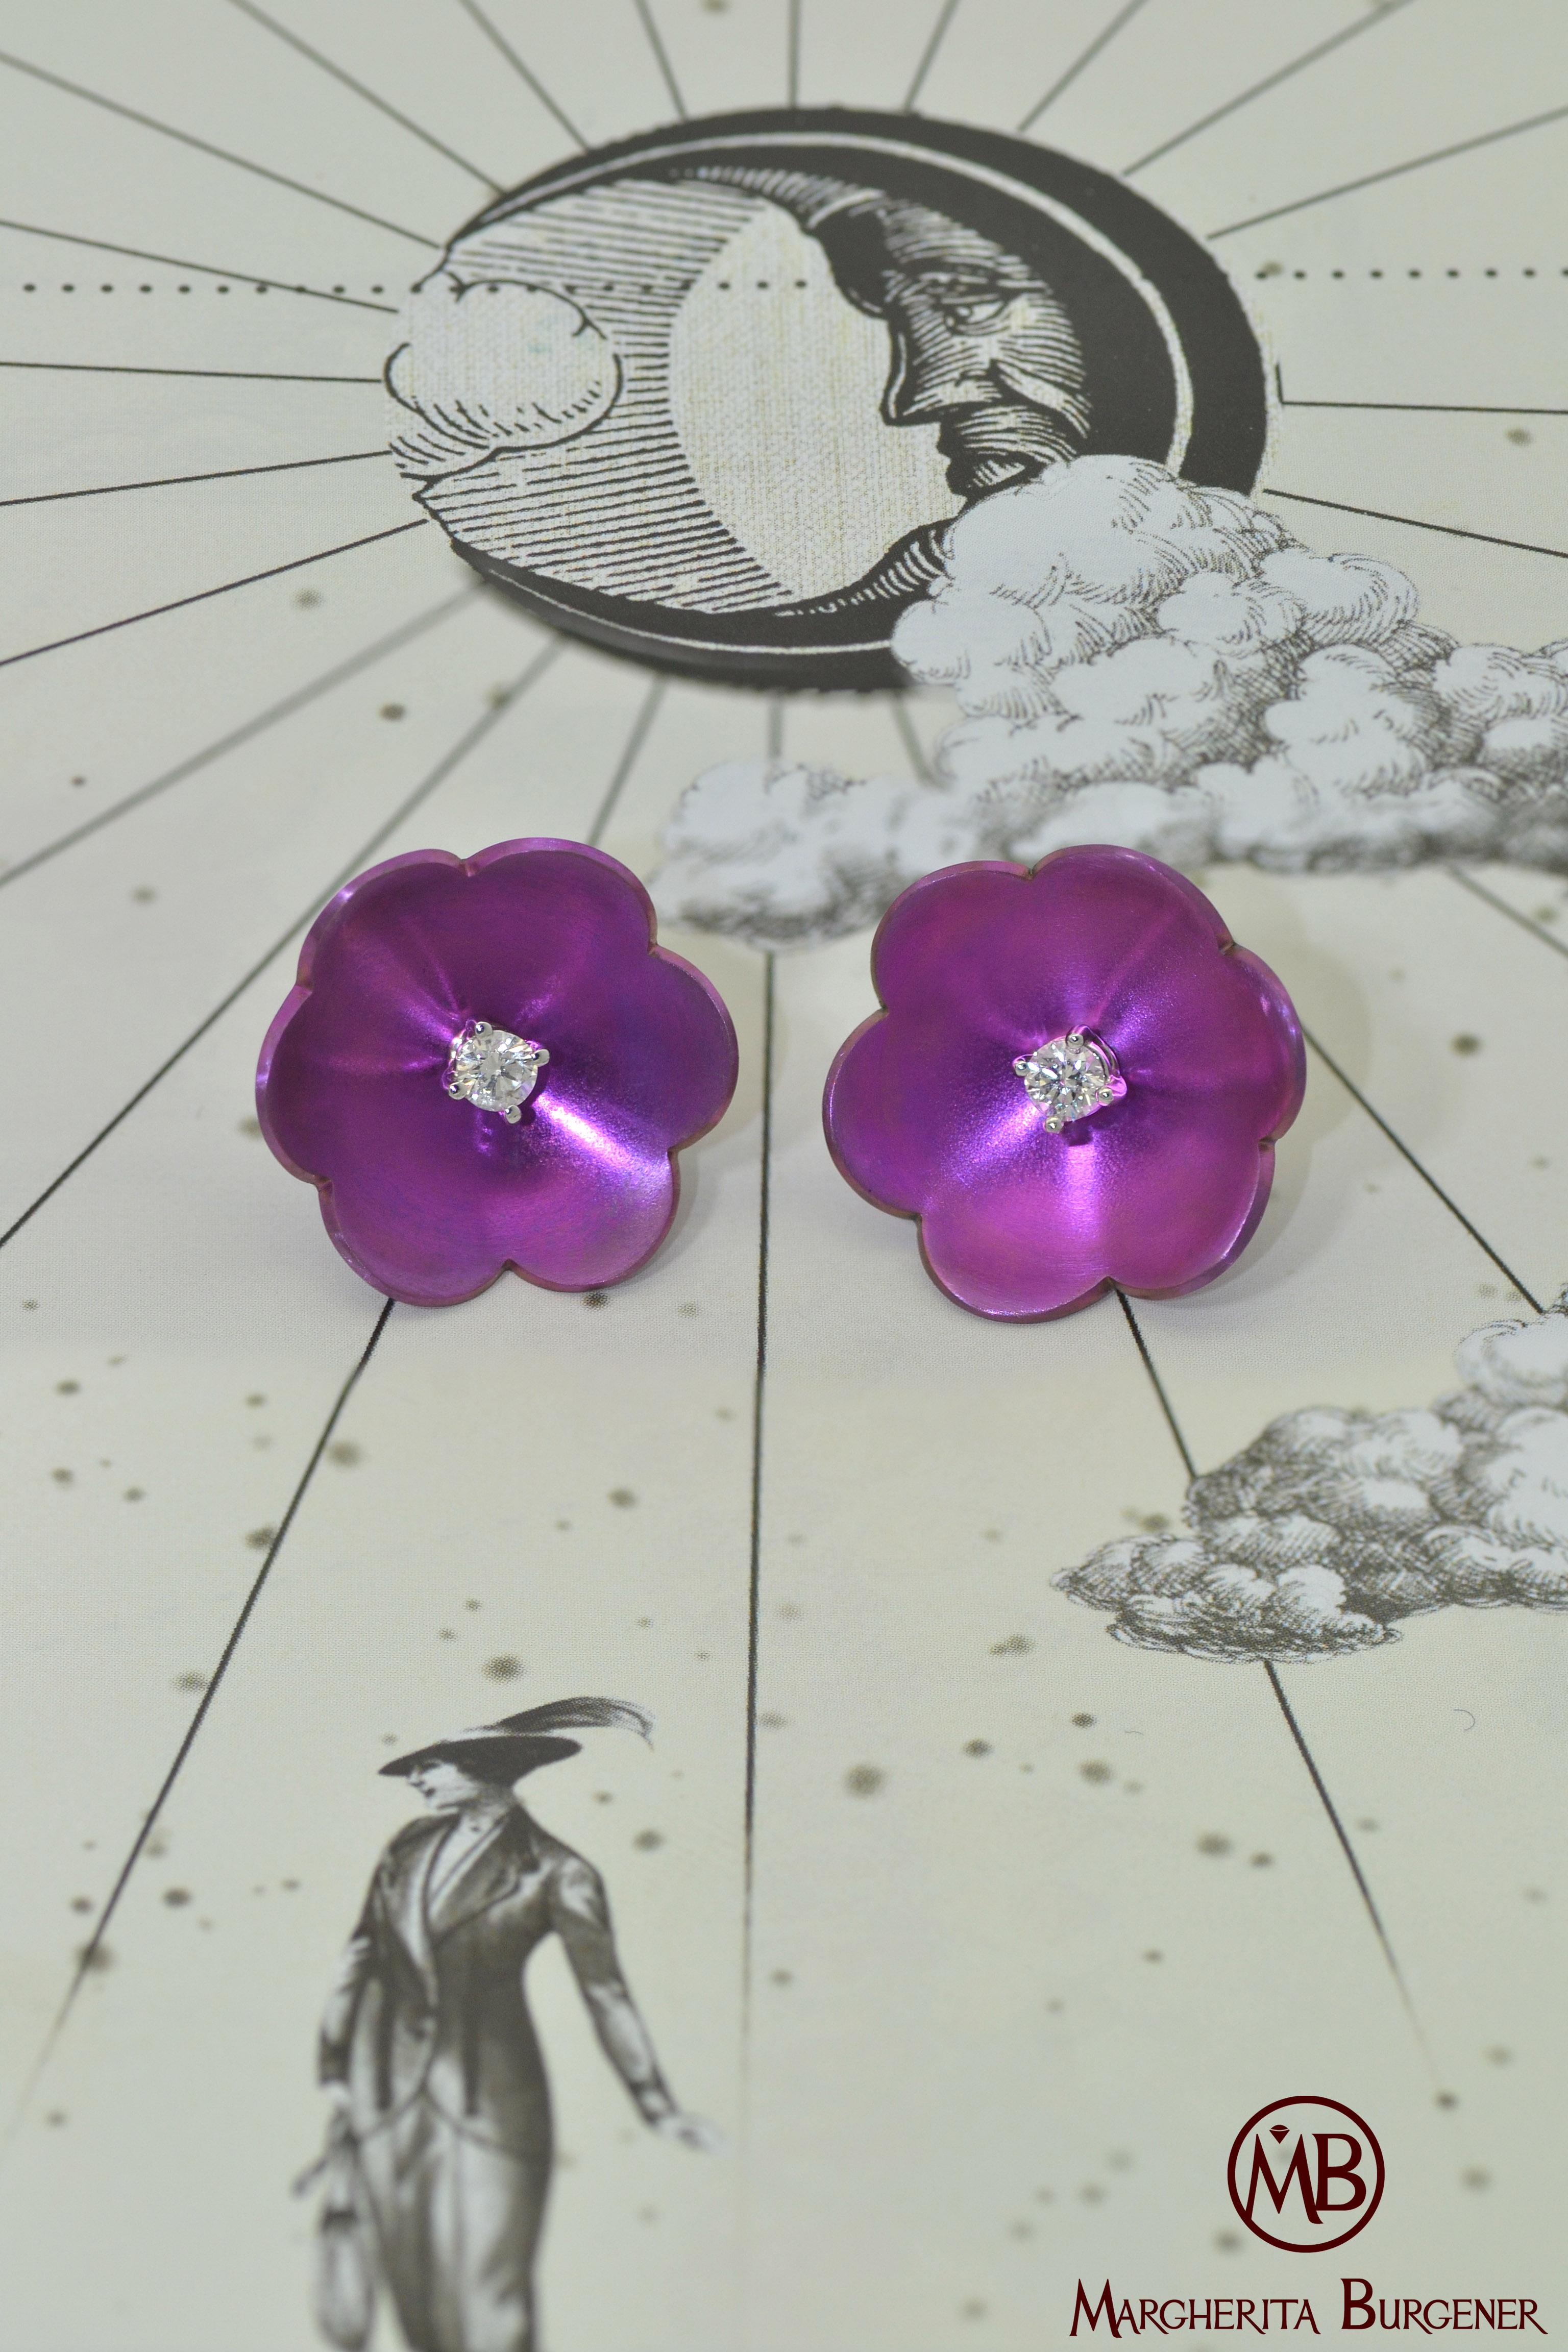 Handgefertigt in der Familienfabrik von Margherita Burgener,  die Transformator-Ohrringe mit Blumenmotiv sind mit einem einzelnen Diamanten in 18 KT Weißgold gefasst. 
Diamanten können aus der Blüte entnommen werden  und als einzelne Stollen